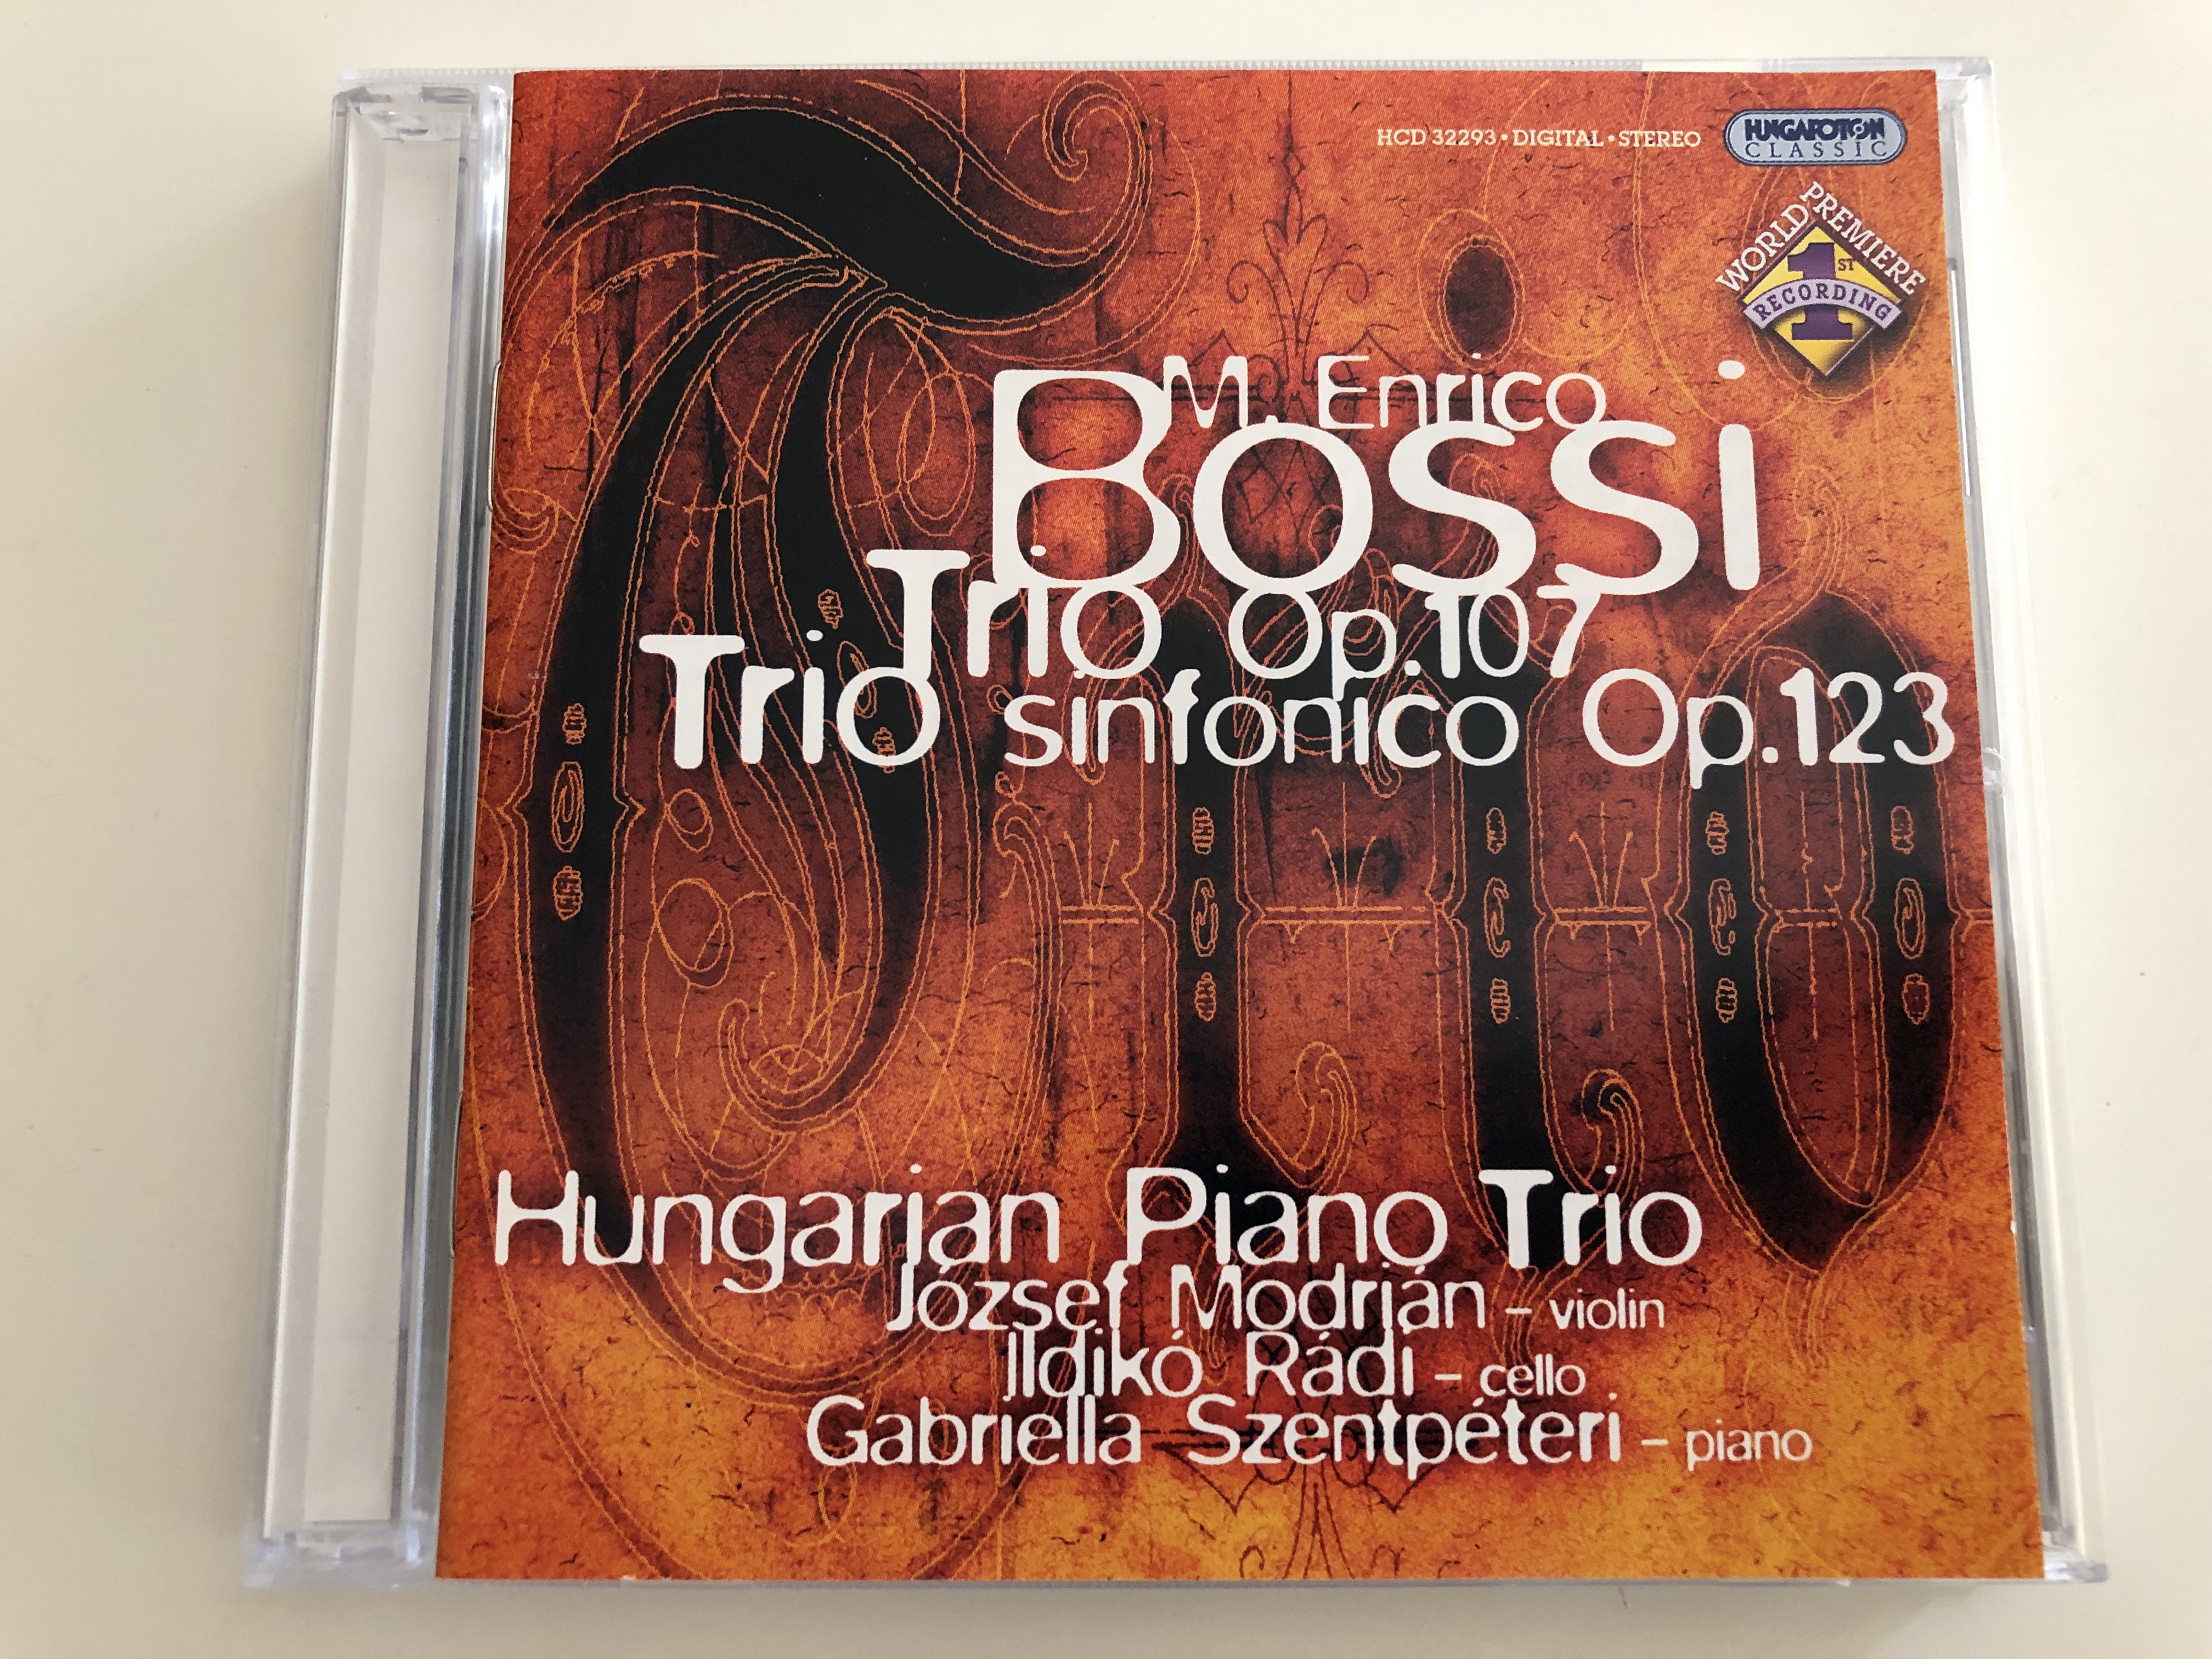 m.-enrico-bossi-trio-op.-107-trio-sinfonico-op.-123-hungarian-piano-trio-j-zsef-modri-n-violin-ildik-r-di-cello-gabriella-szentp-teri-piano-hungaroton-classic-audio-cd-2005-hcd-32293-1-.jpg